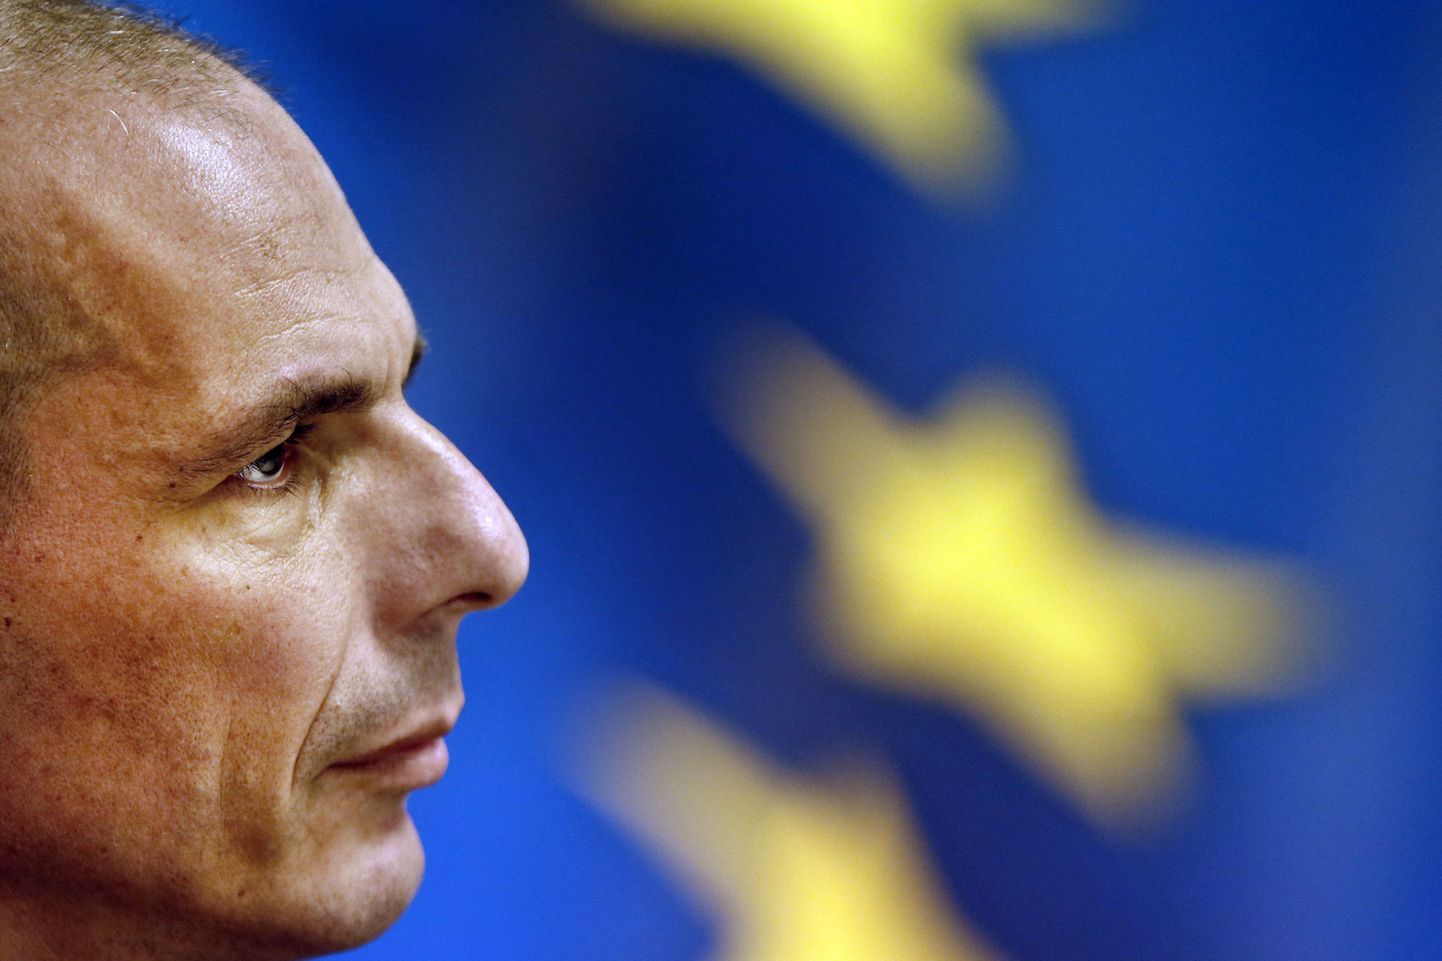 Kreeka rahandusministril Yanis Varoufakisel   läks eile Riias eurogrupi kolleegidega sõnasõjaks.